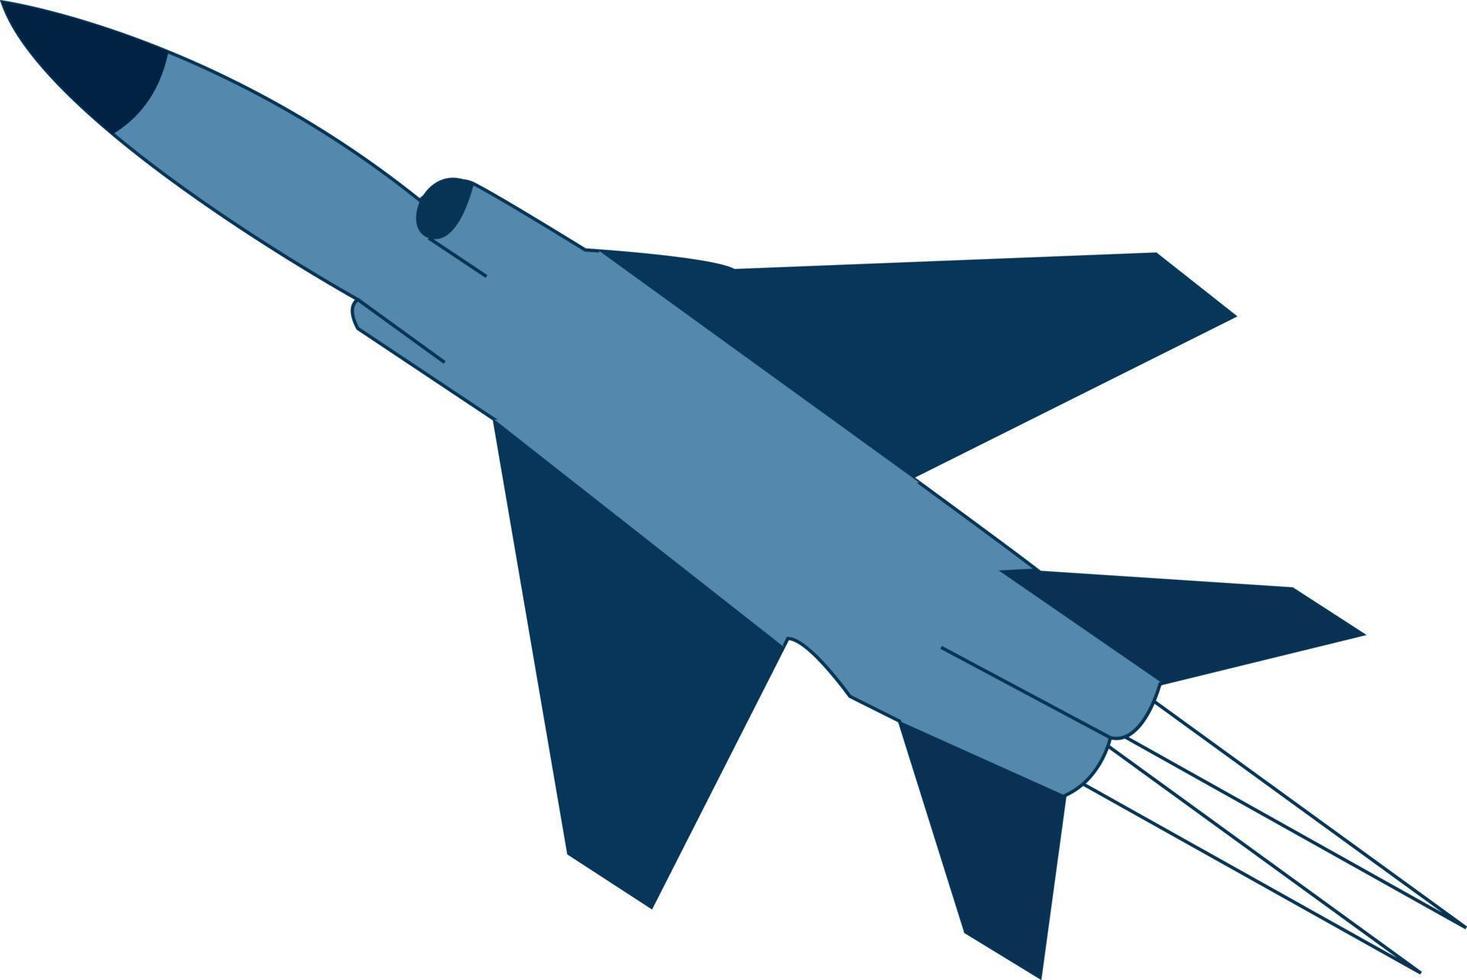 kämpe flygplan, illustration, vektor på vit bakgrund.